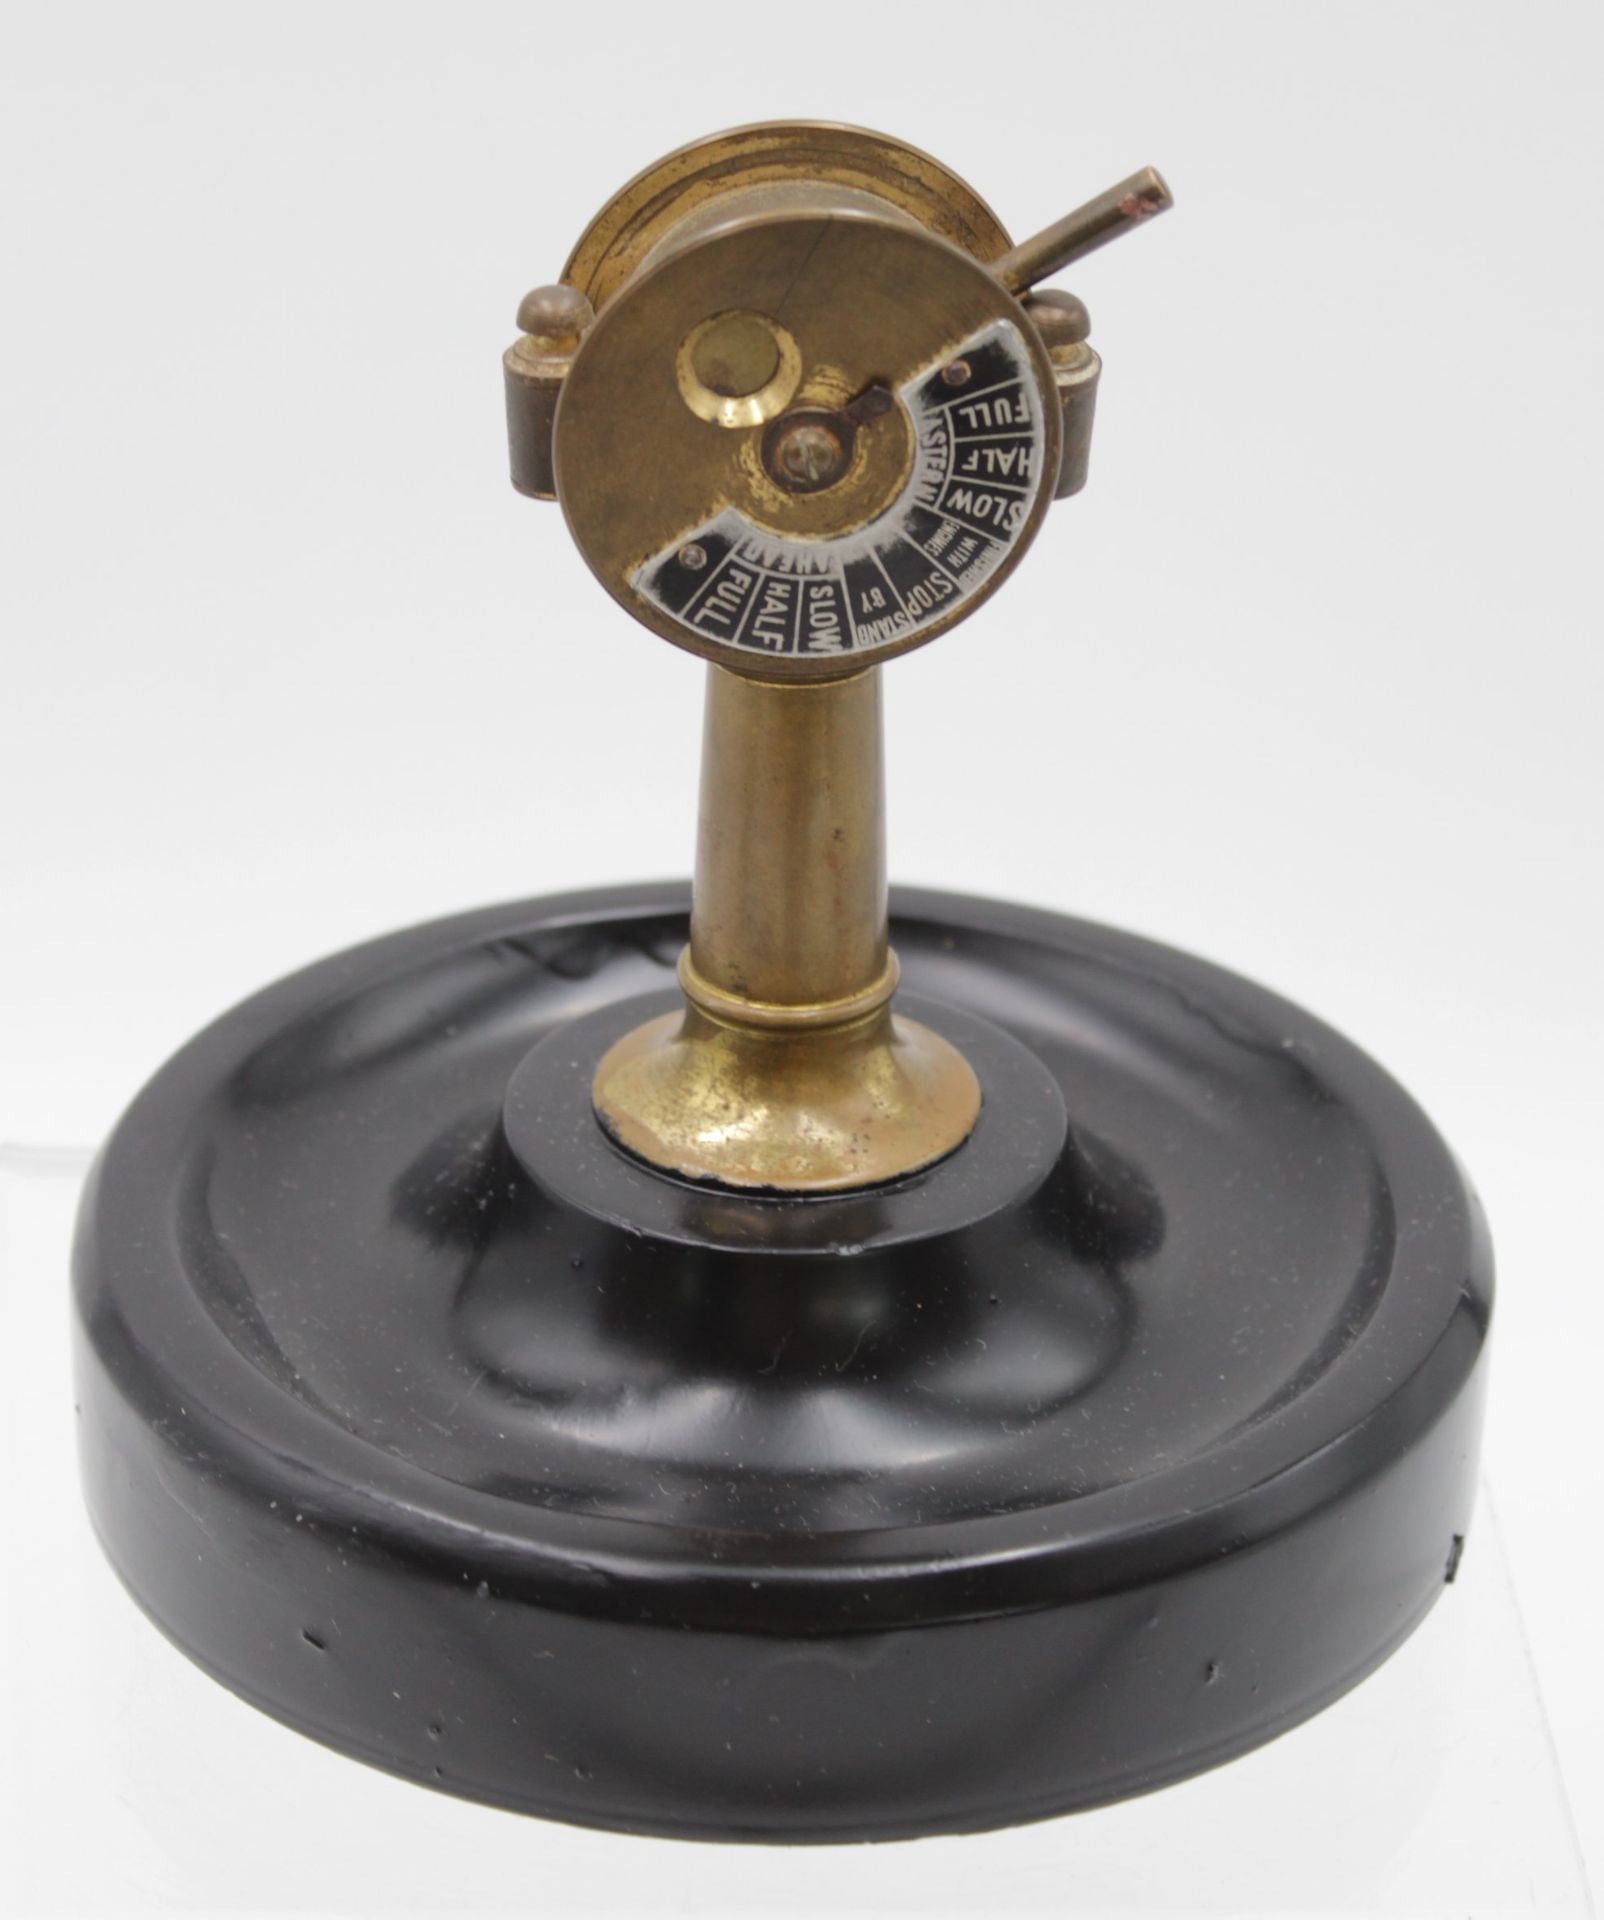 Ascher mit kl, Zigarrenschneider in Form eines Maschinentelegraphs, ca. H-13cm D-13,5cm. - Bild 3 aus 5